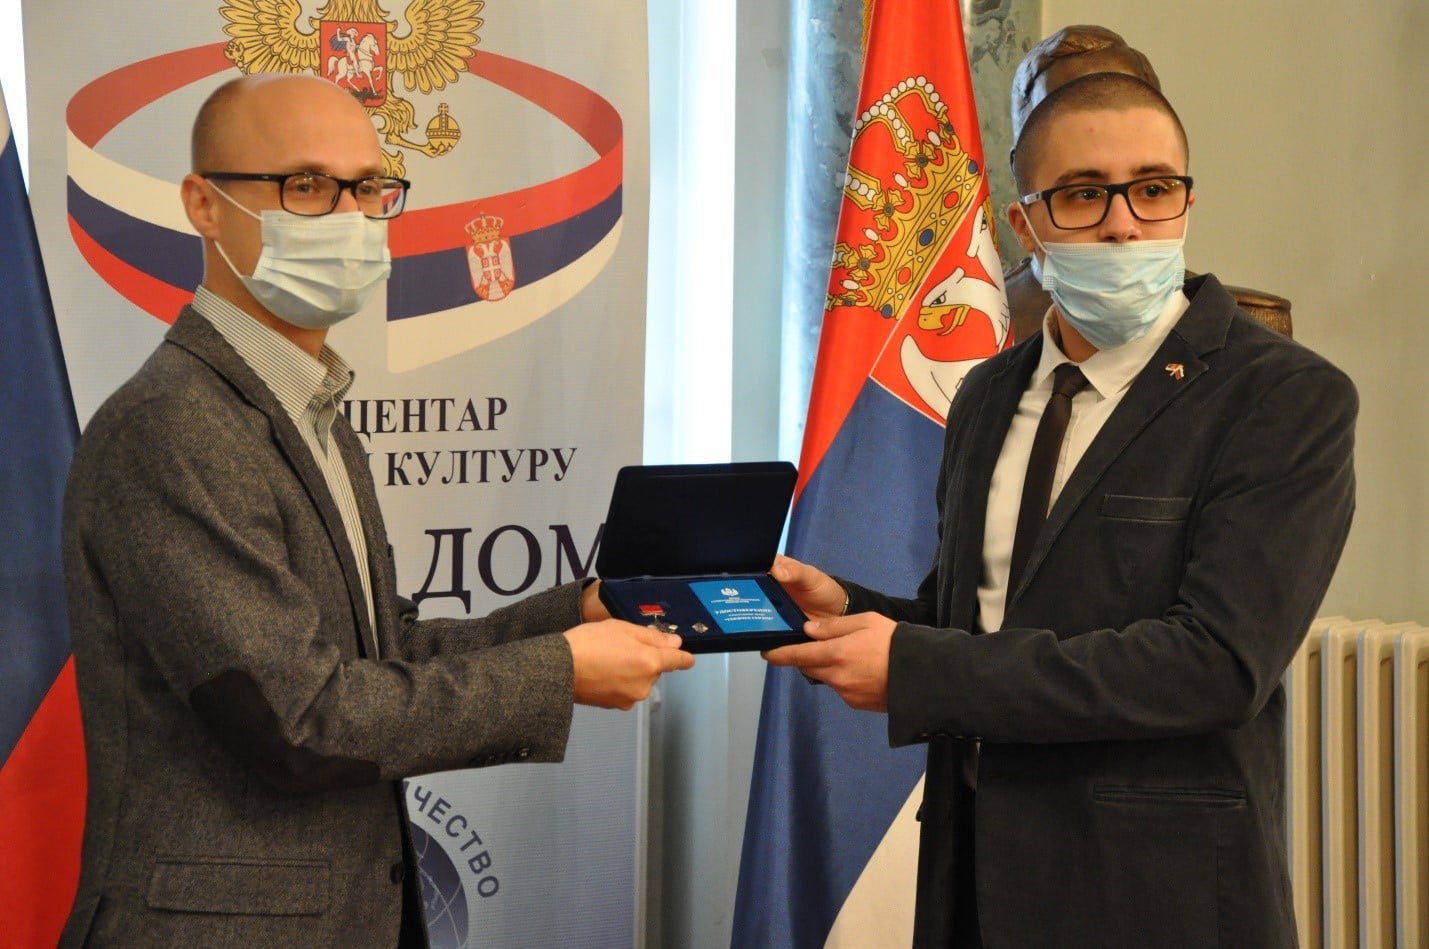 Награда нашла своего героя, благодаря русско-сербскому сотрудничеству